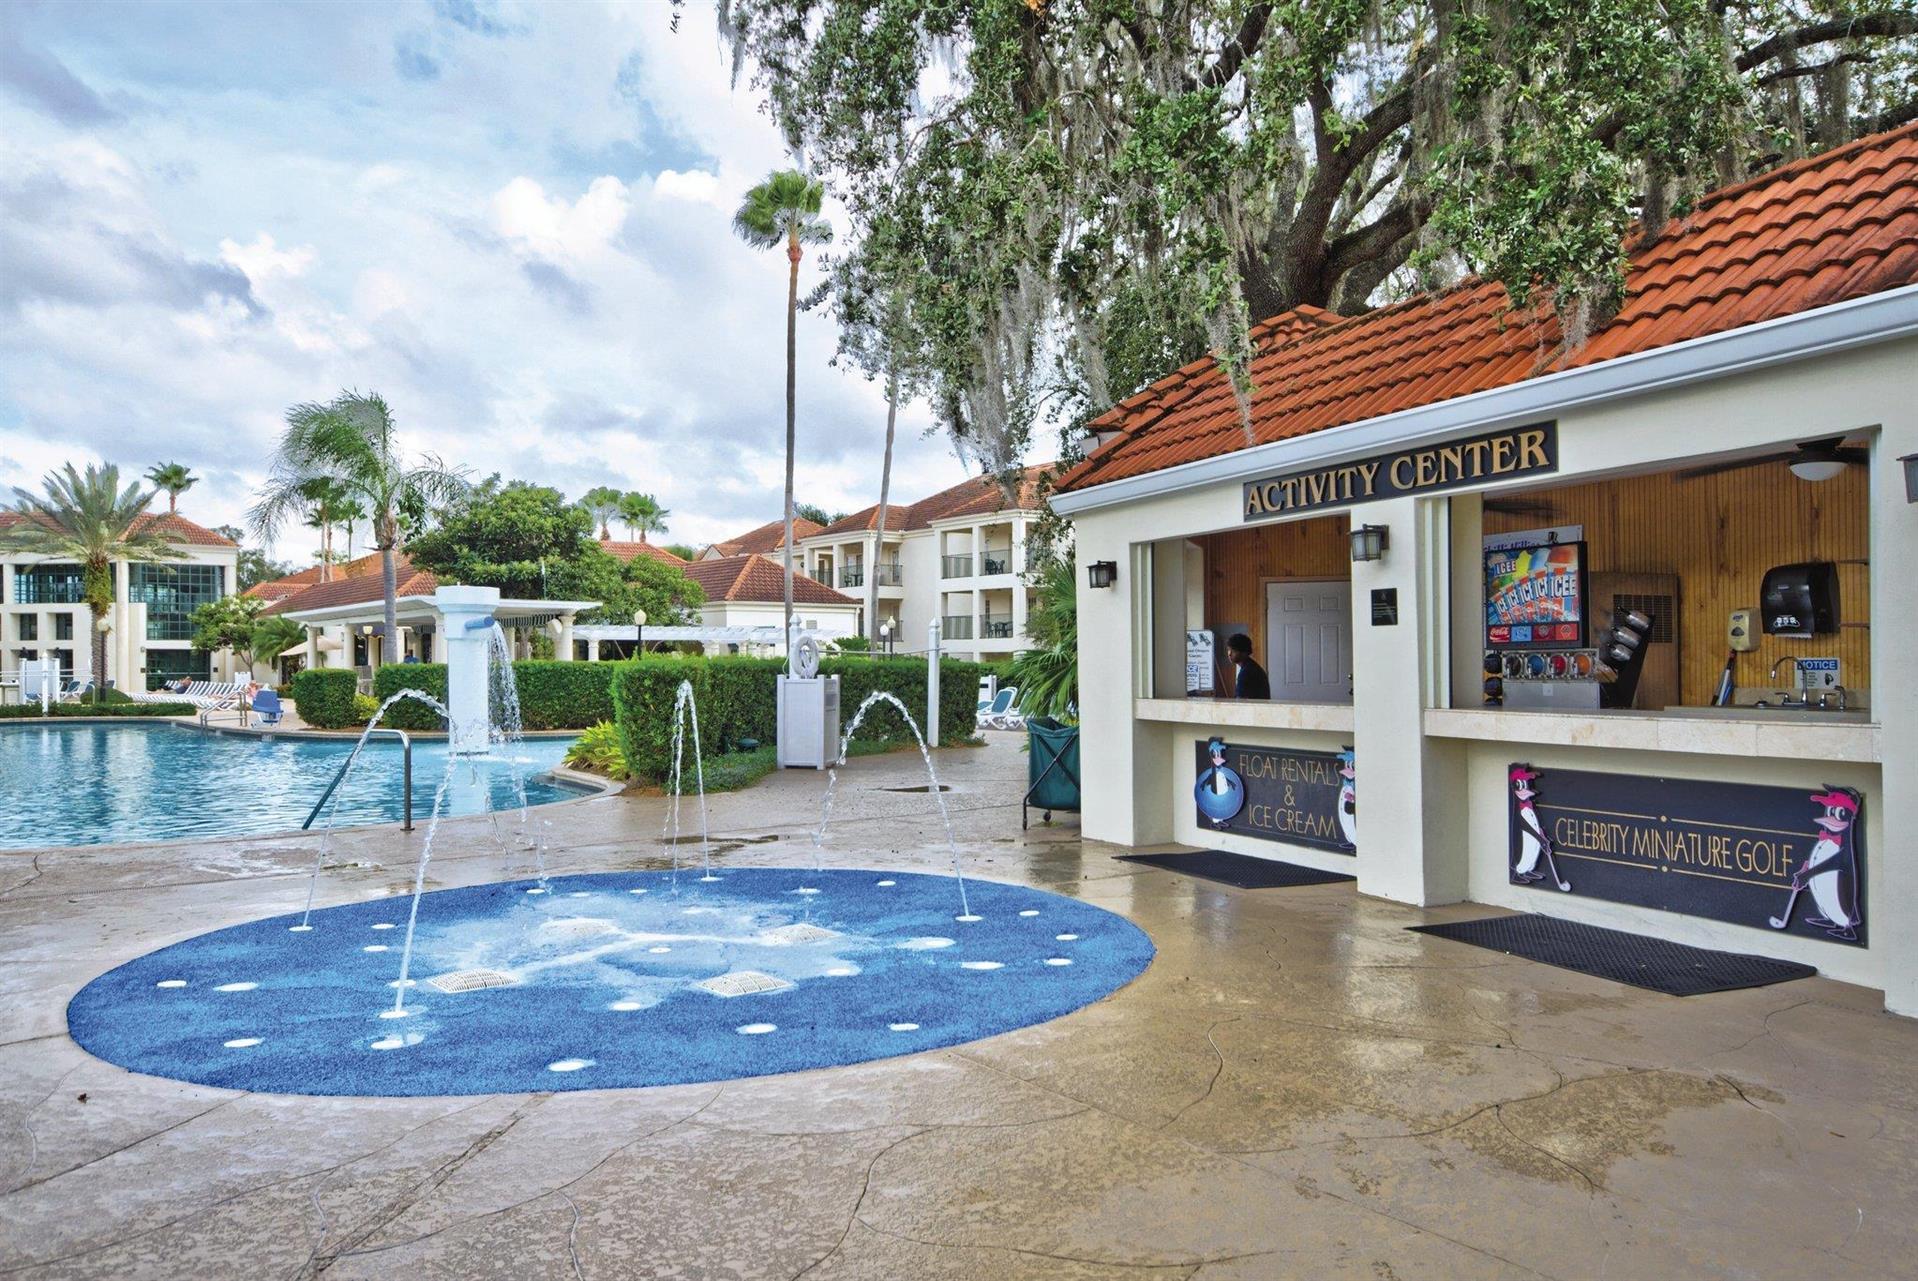 Club Wyndham Star Island in Kissimmee, FL